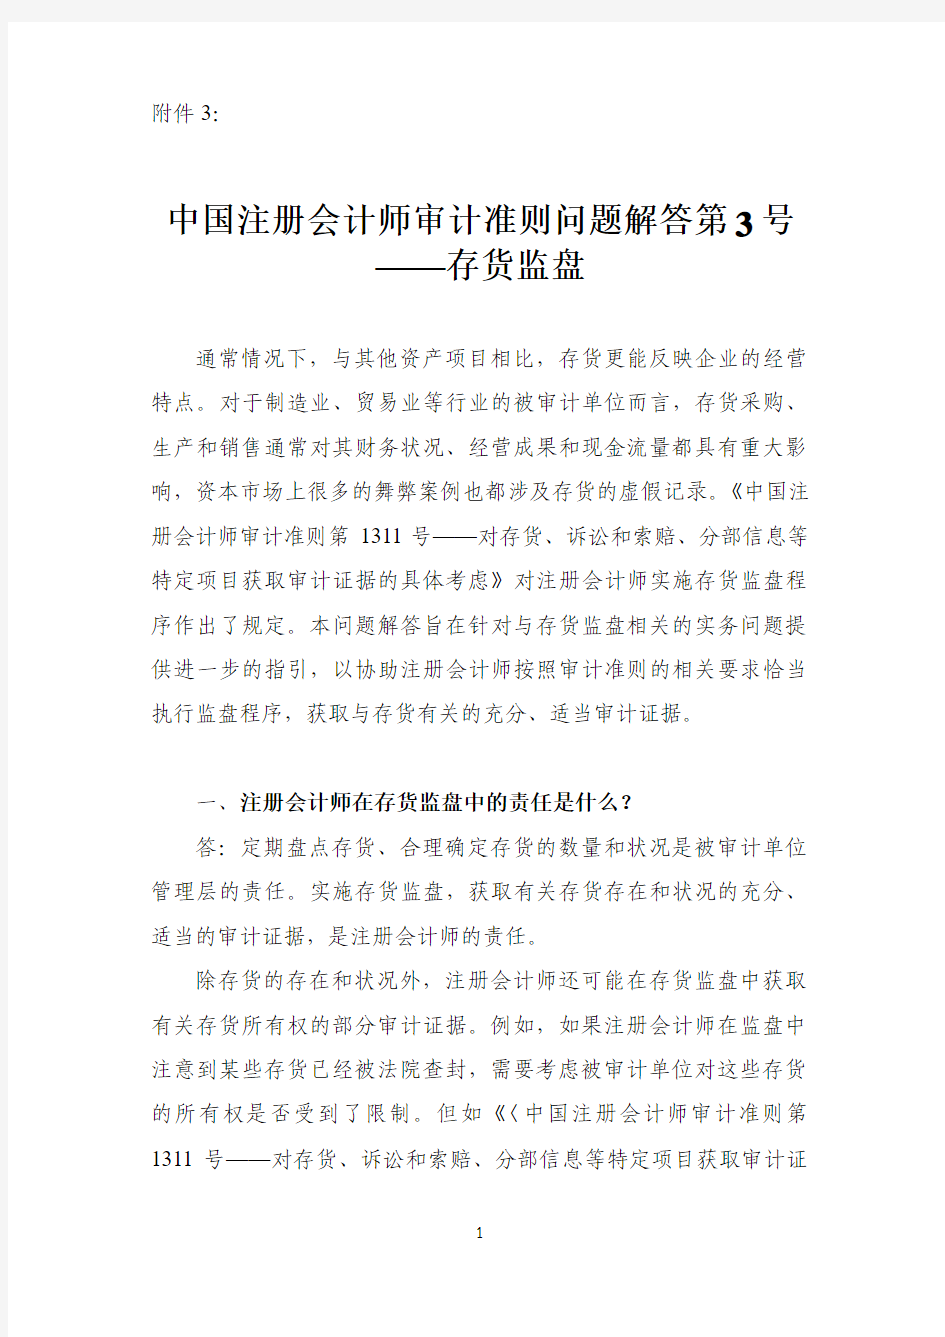 中国注册会计师审计准则问题解答第3号——存货监盘